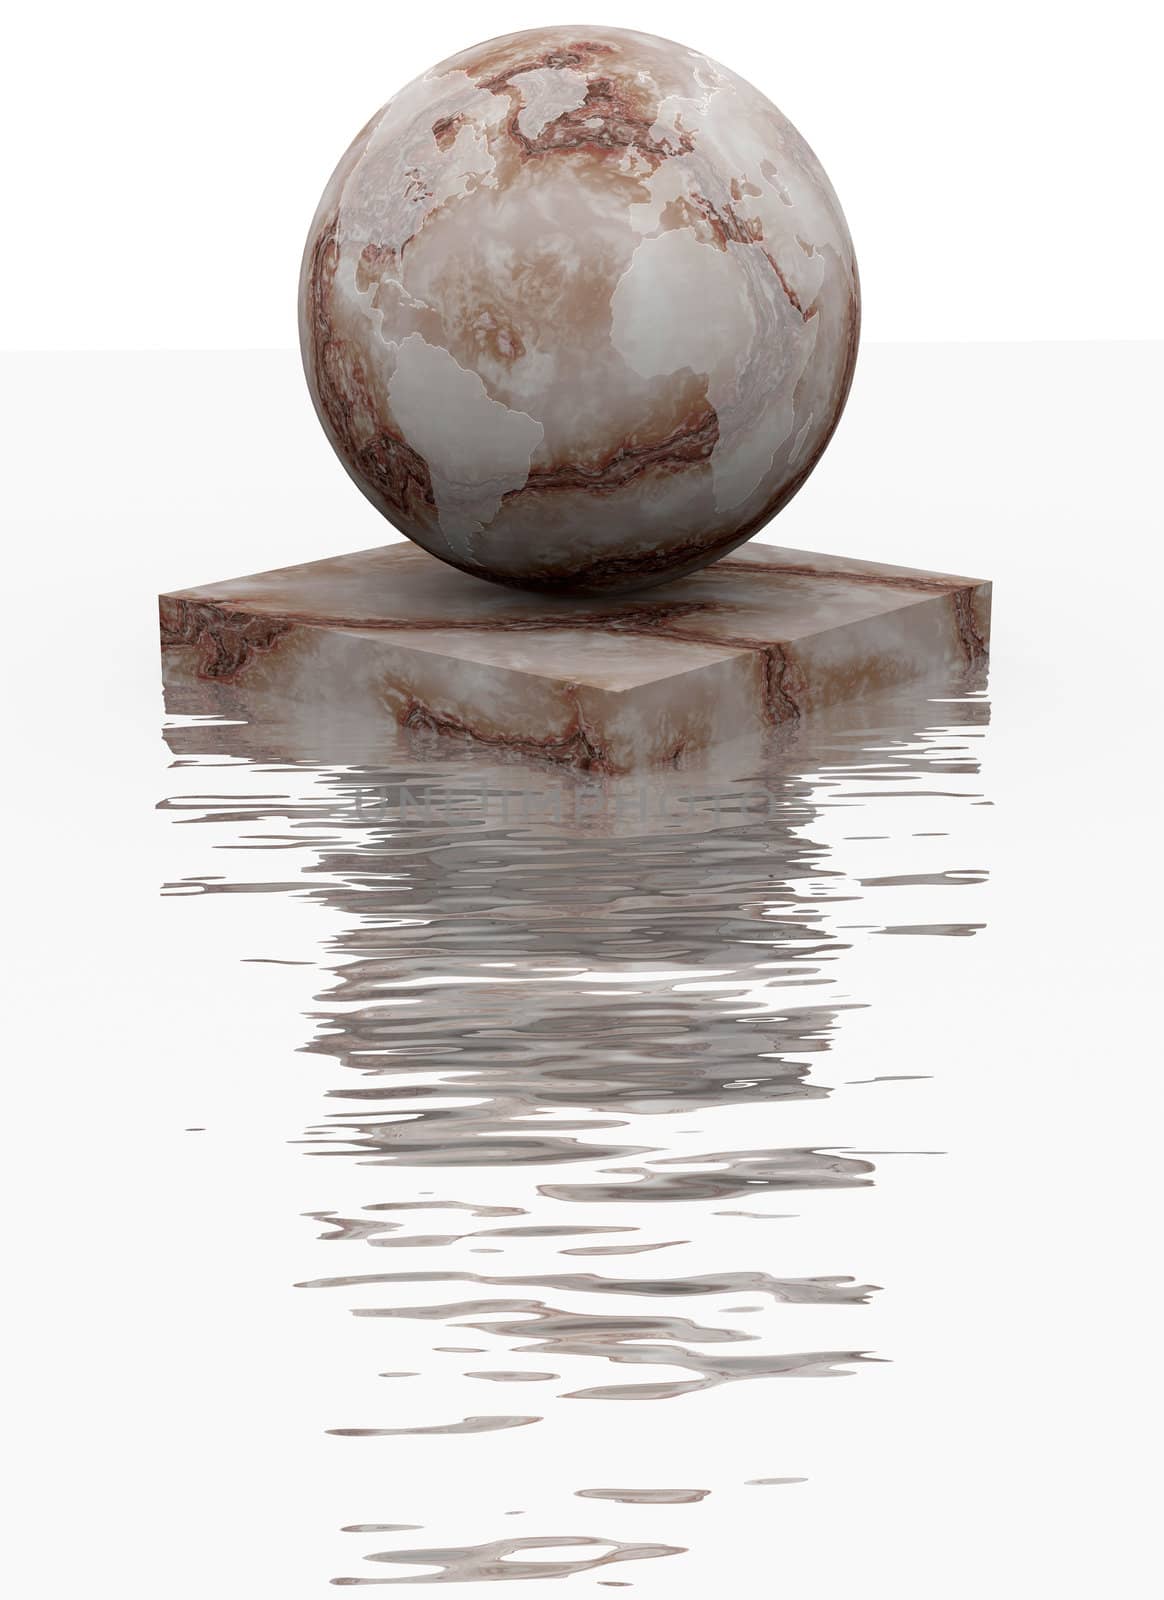 Marble sphere by dengess